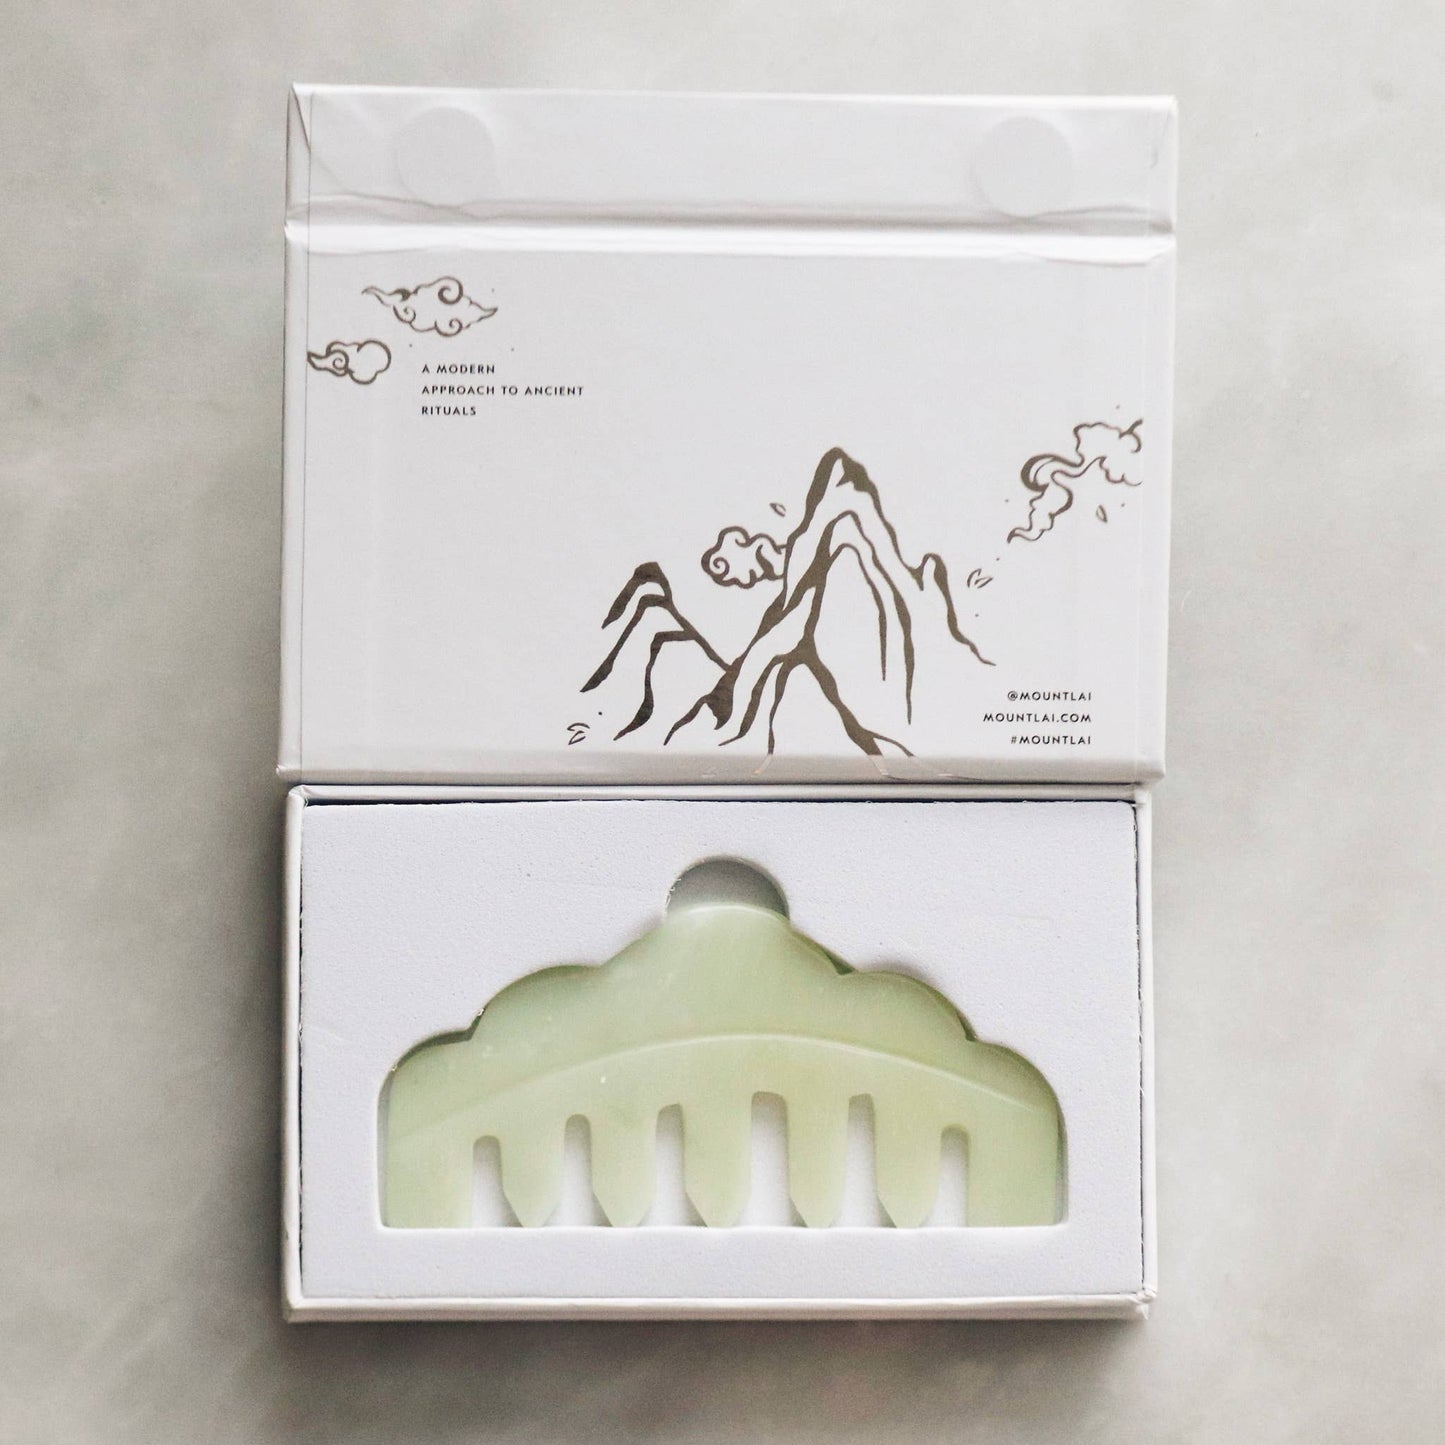 Mount Lai - The Jade Massaging Gua Sha Comb